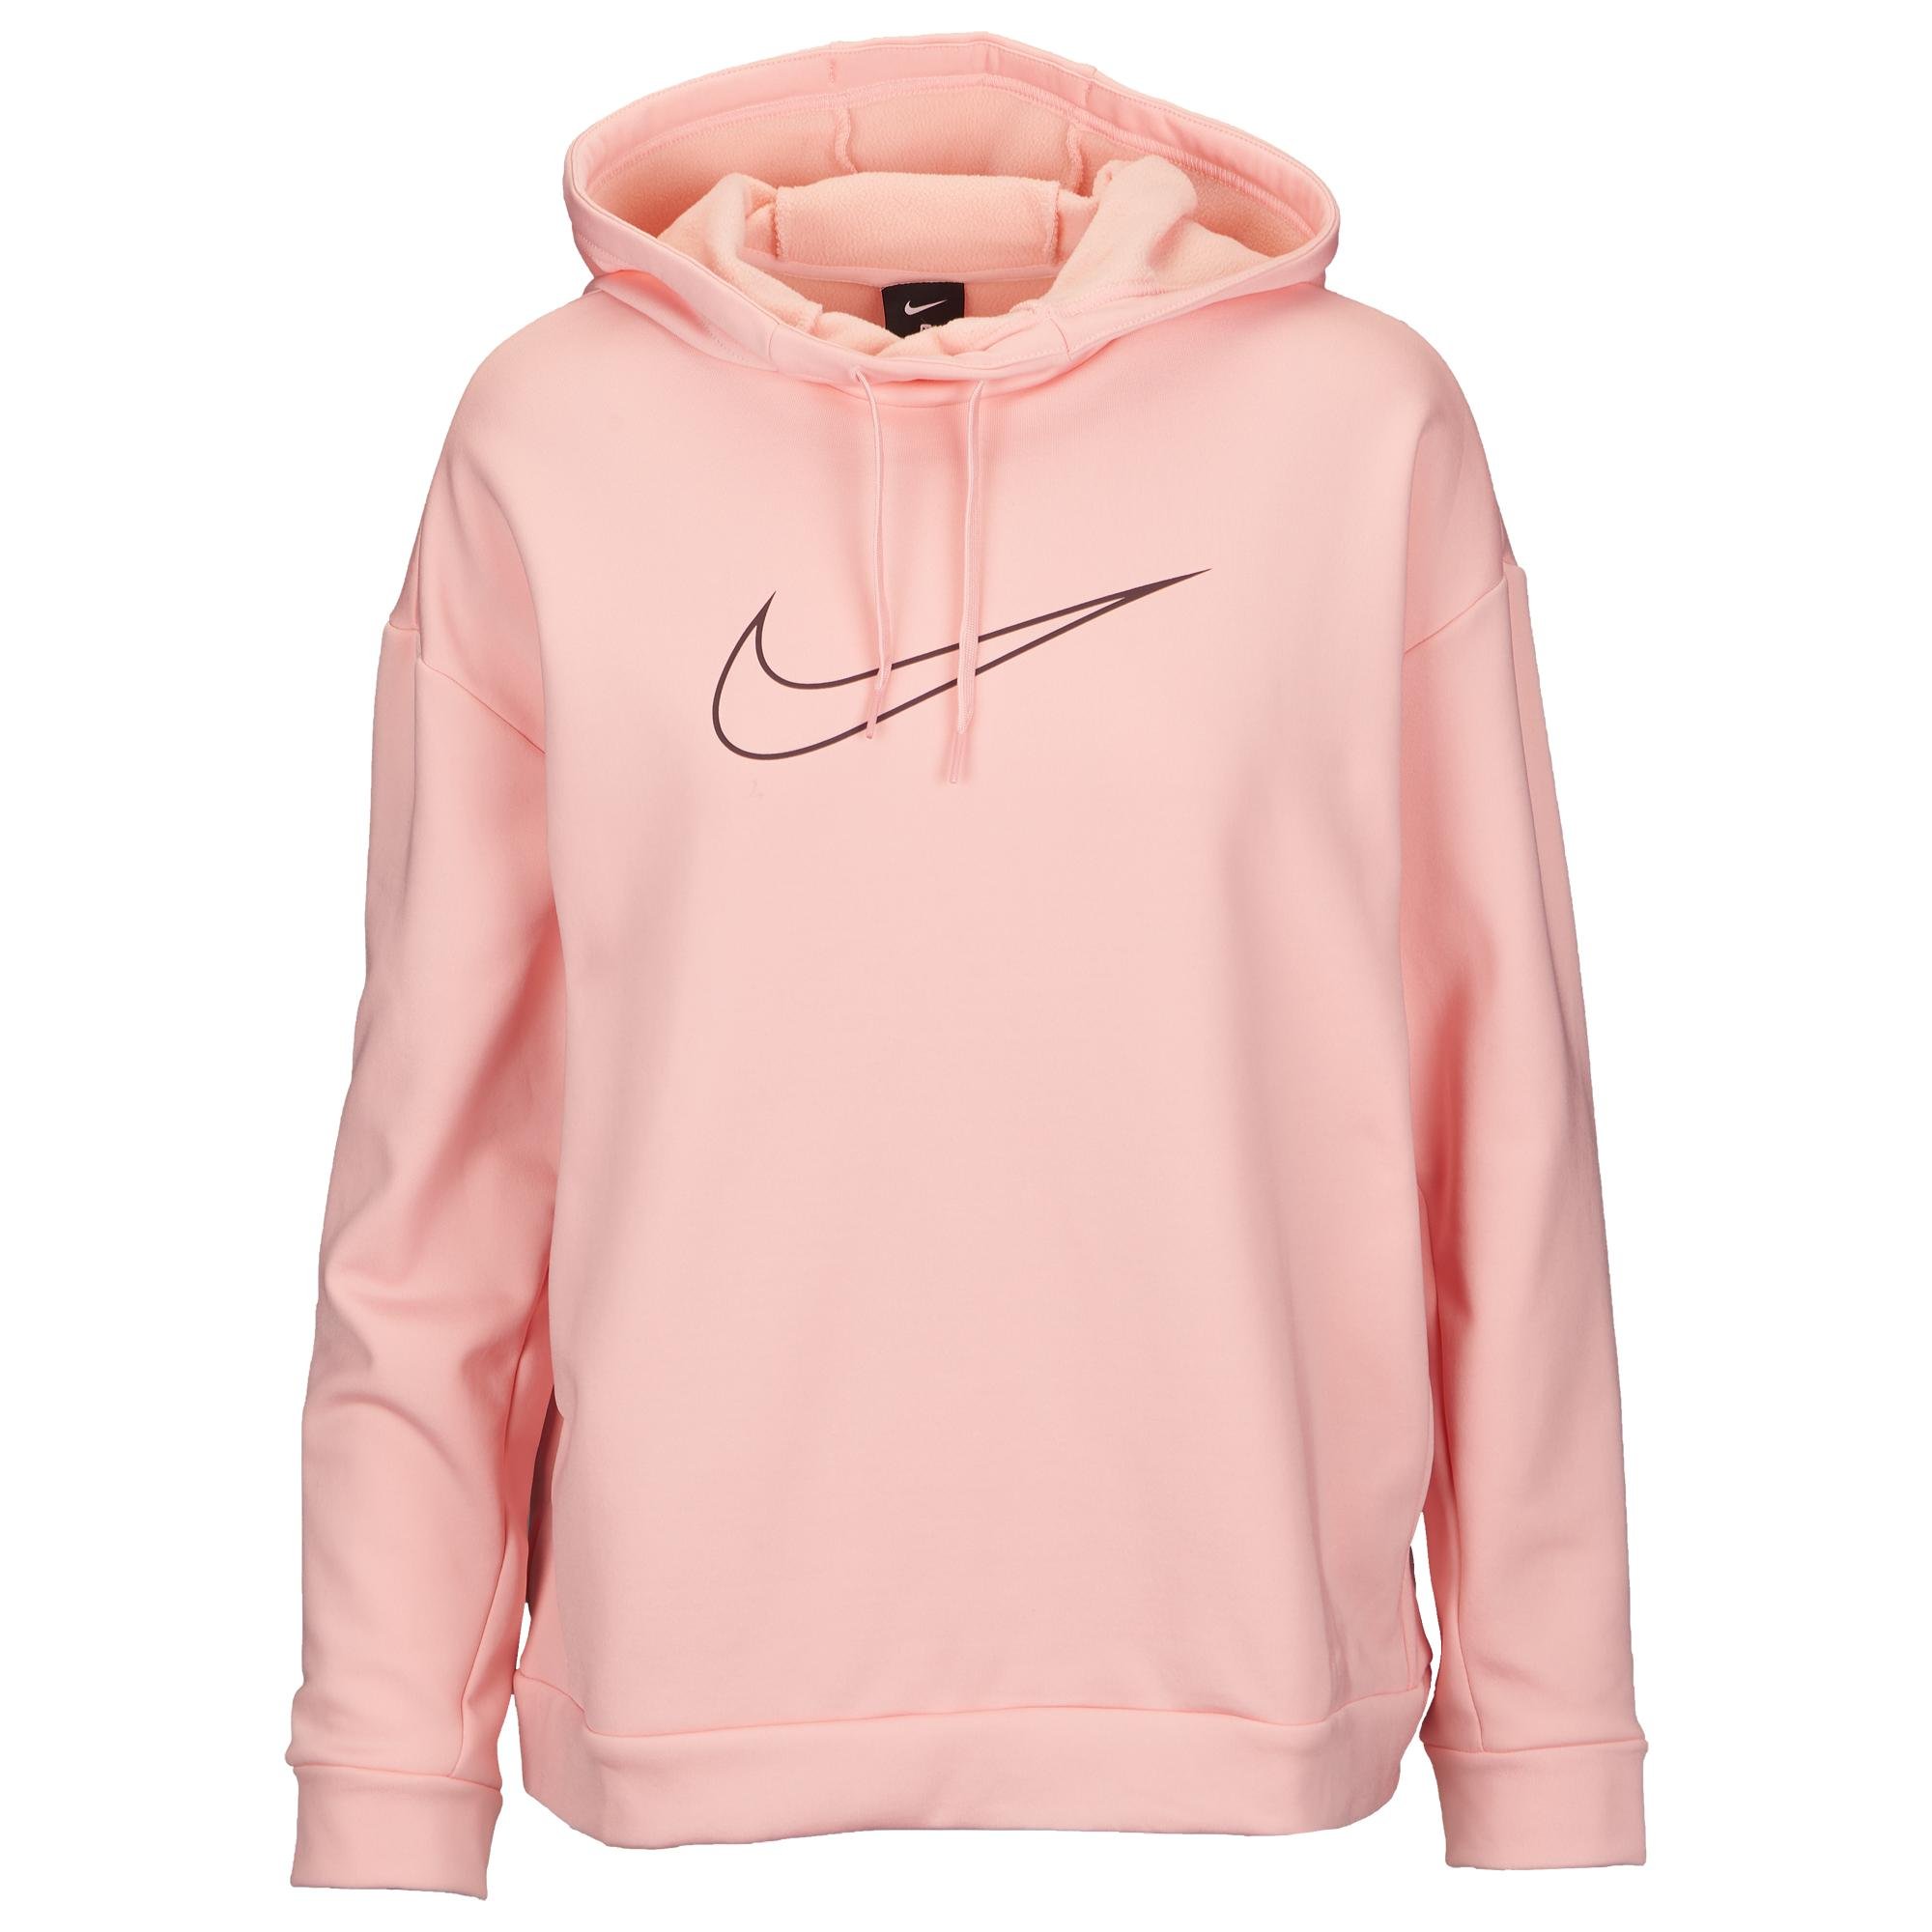 Nike Therma Swoosh Hoodie in Pink - Lyst